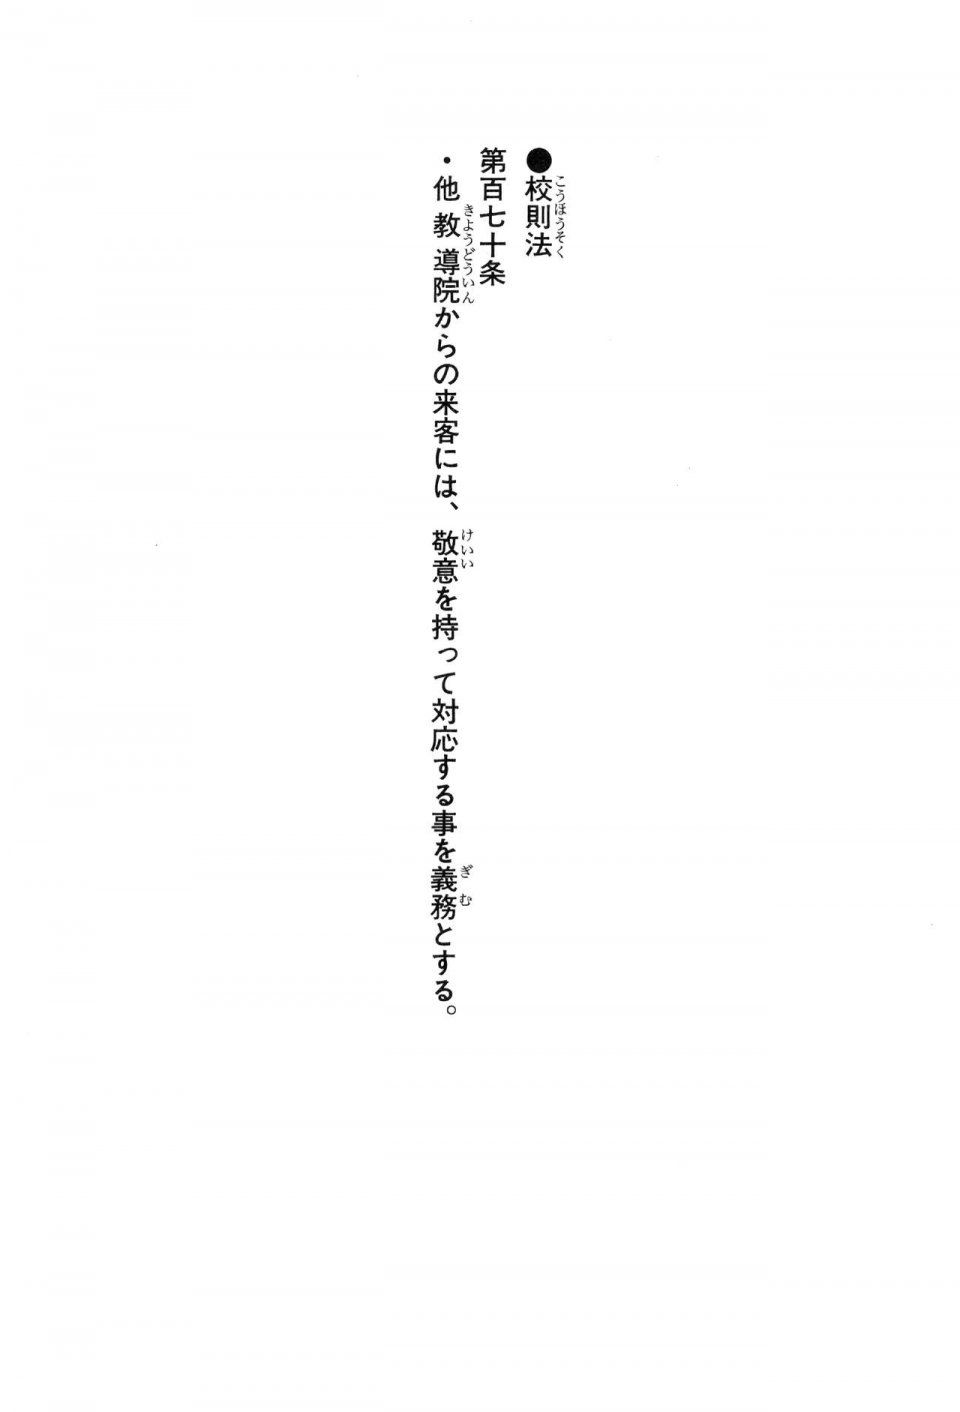 Kyoukai Senjou no Horizon LN Vol 16(7A) - Photo #18